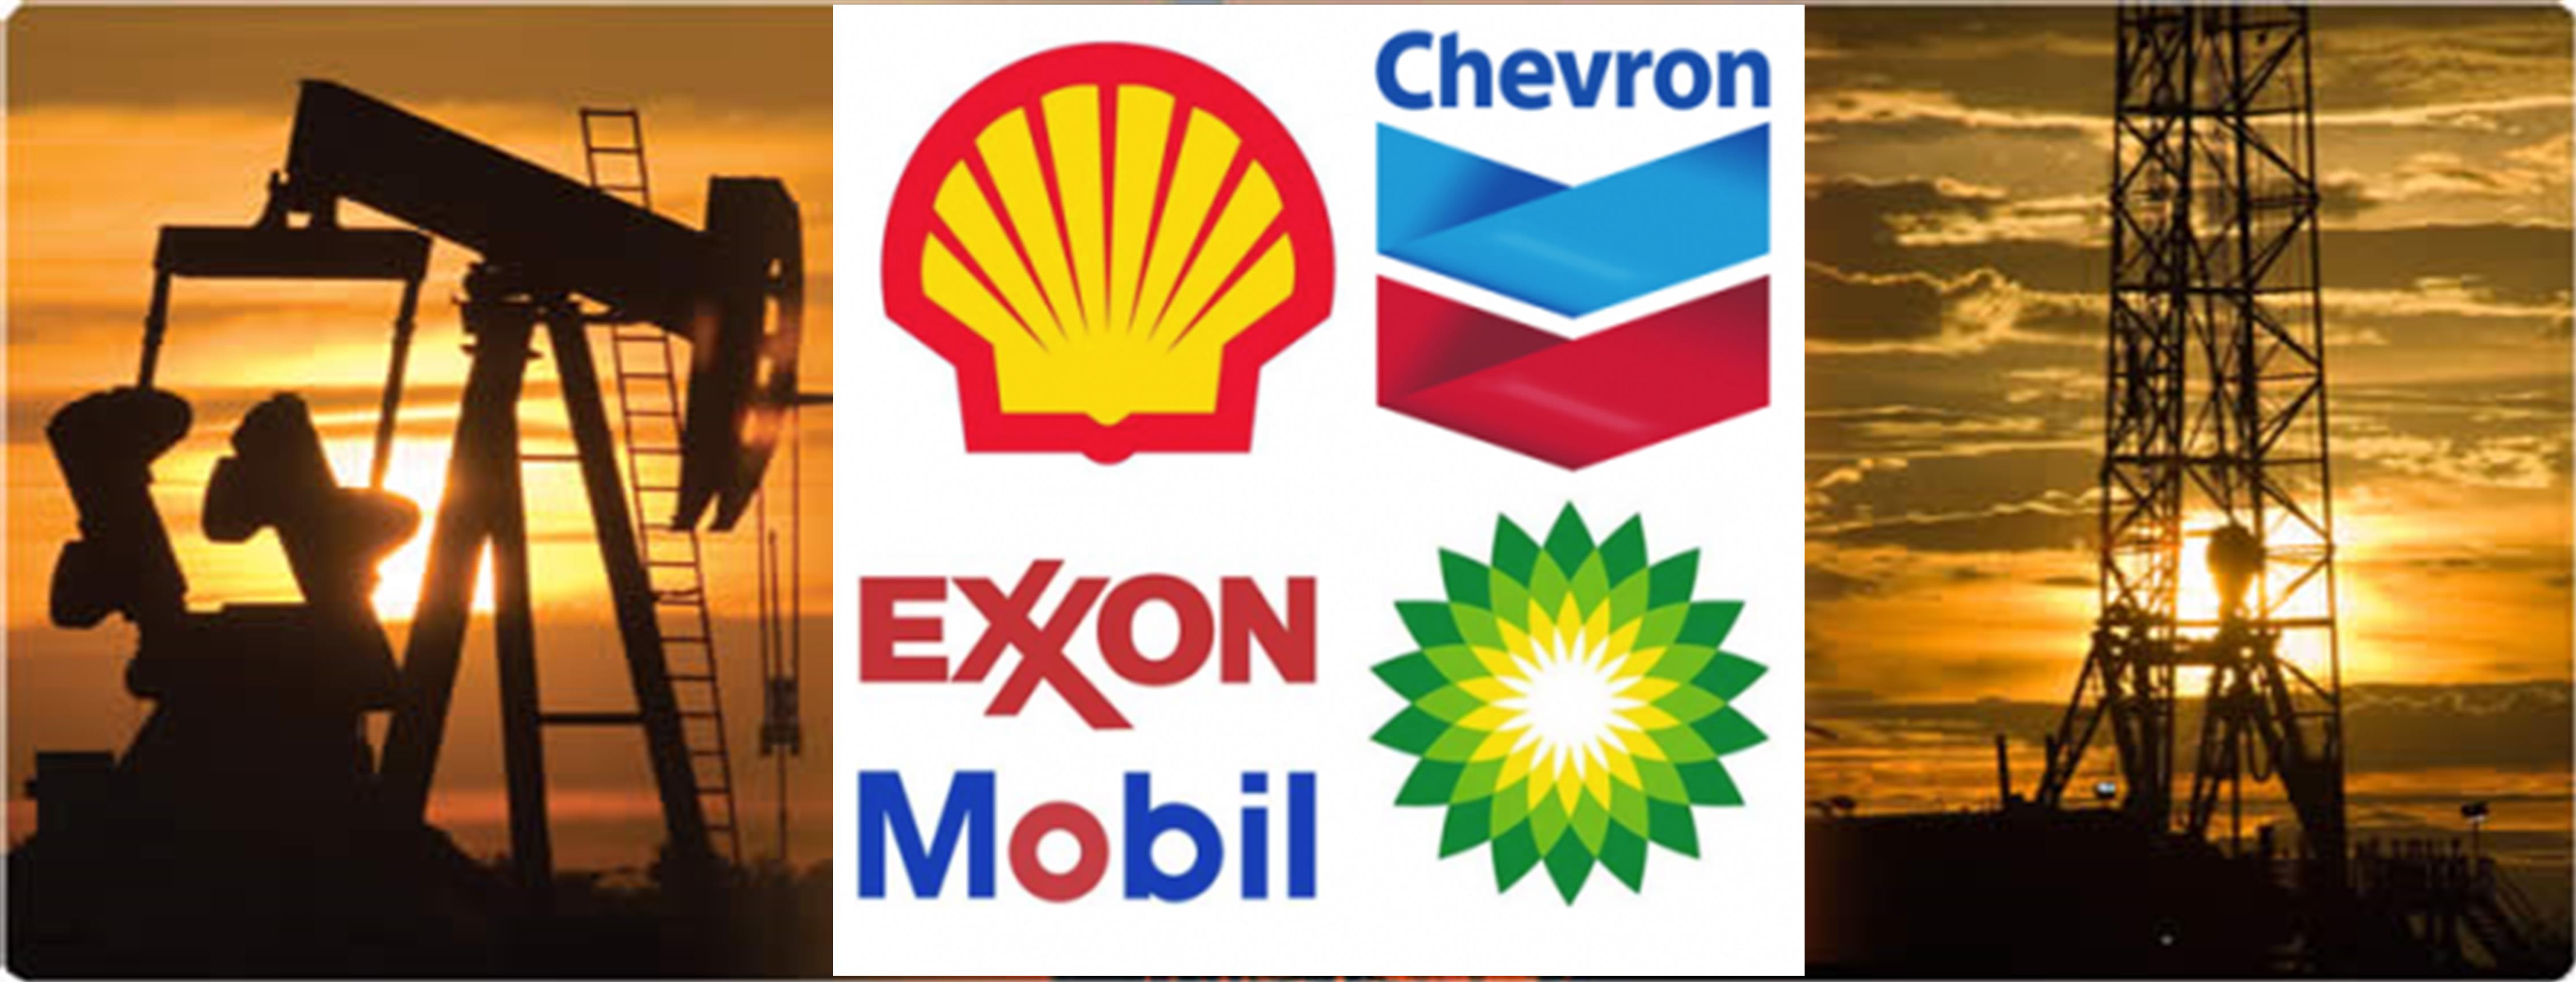 Ein55 Newsletter No 025 - image - oil & gas